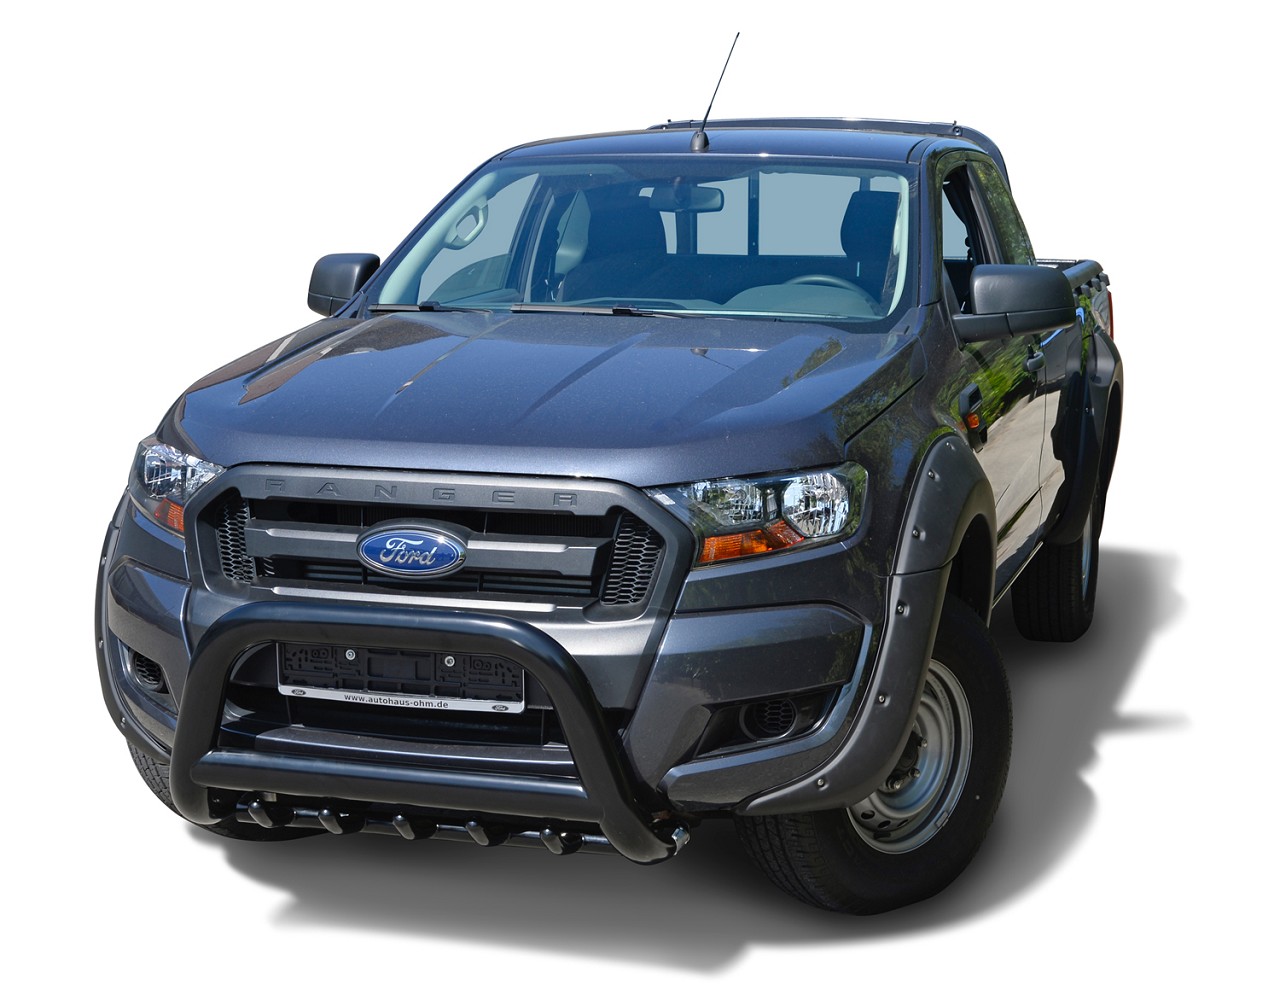 Kotflügelverbreiterung im "Pocket-Style" Design passend für Ford Ranger (2016 - 12/2018)